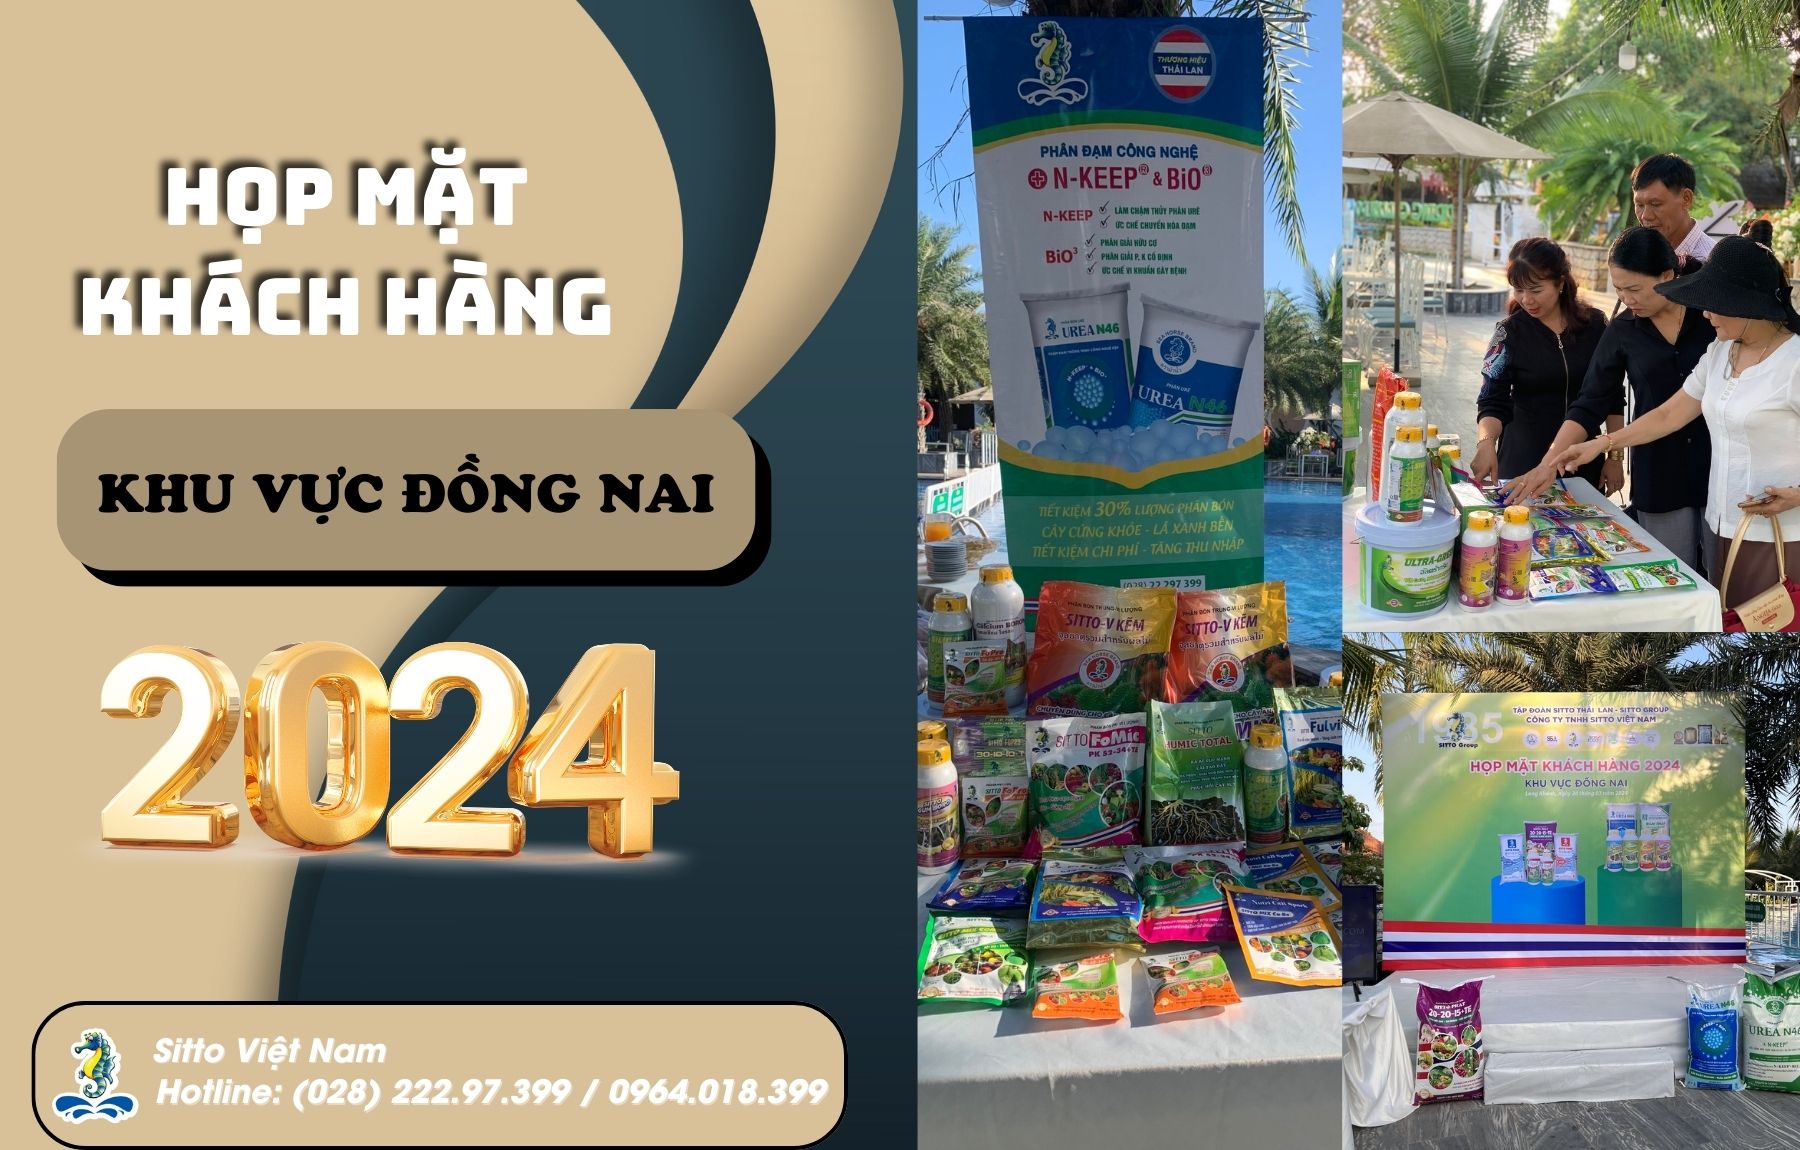 Công ty Sitto Việt Nam - Họp mặt khách hàng khu vực Đồng Nai 2024